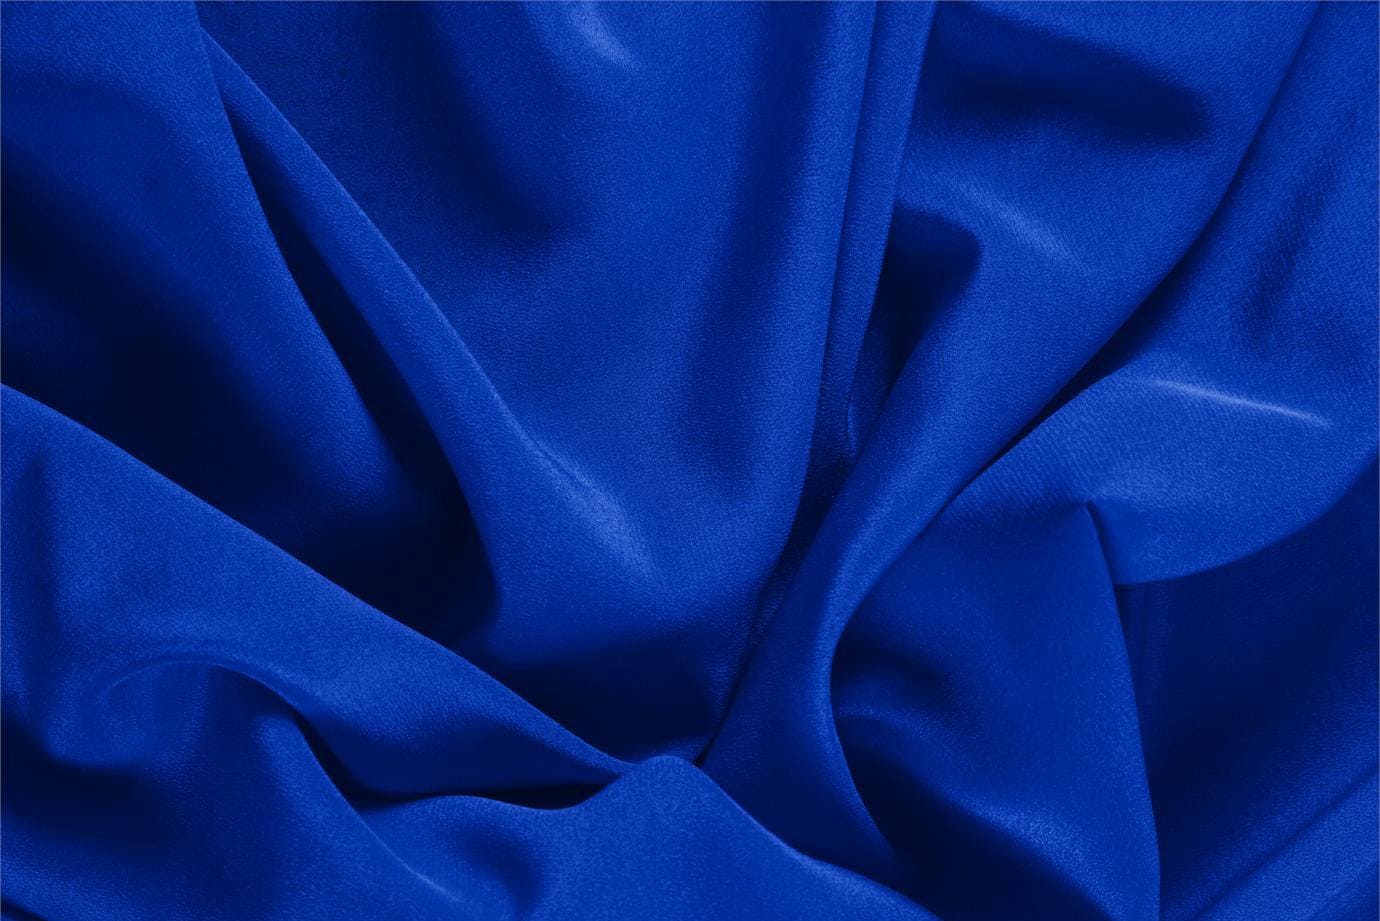 Tessuto Crêpe de Chine Blu Elettrico in Seta per abbigliamento